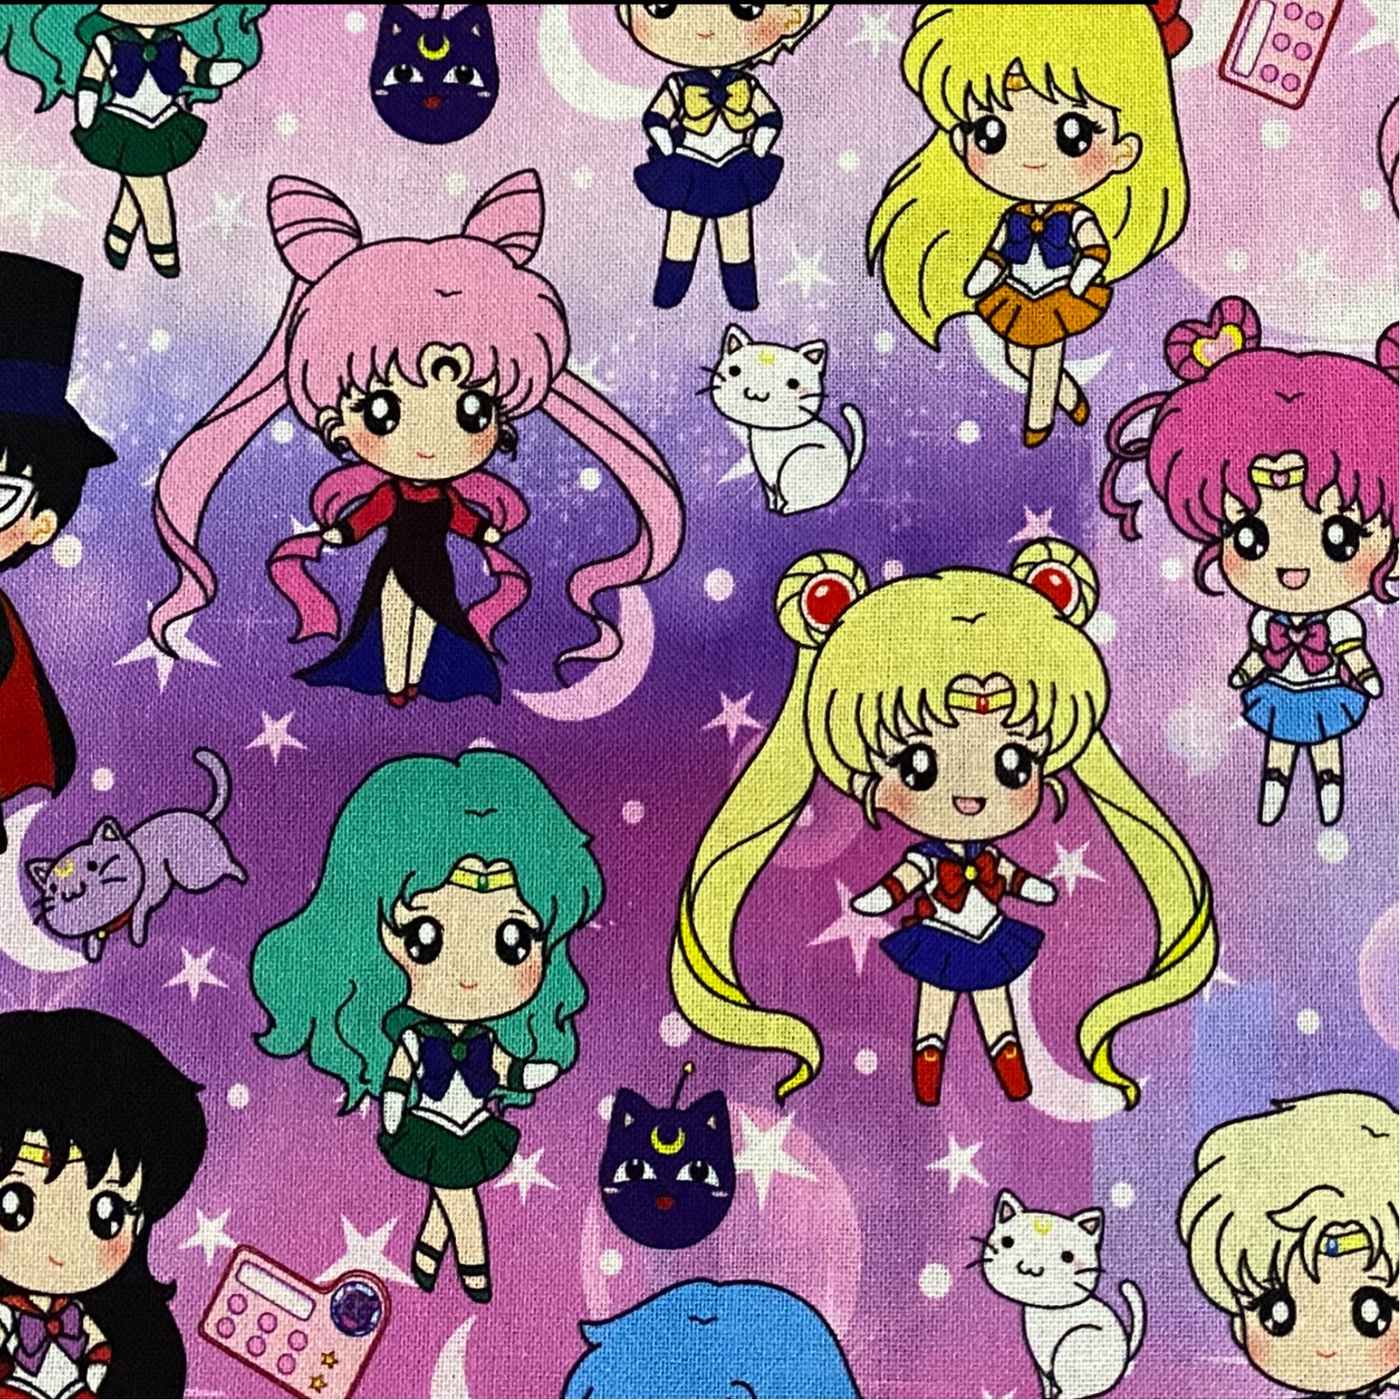 Sailor Moon Anime- Classic